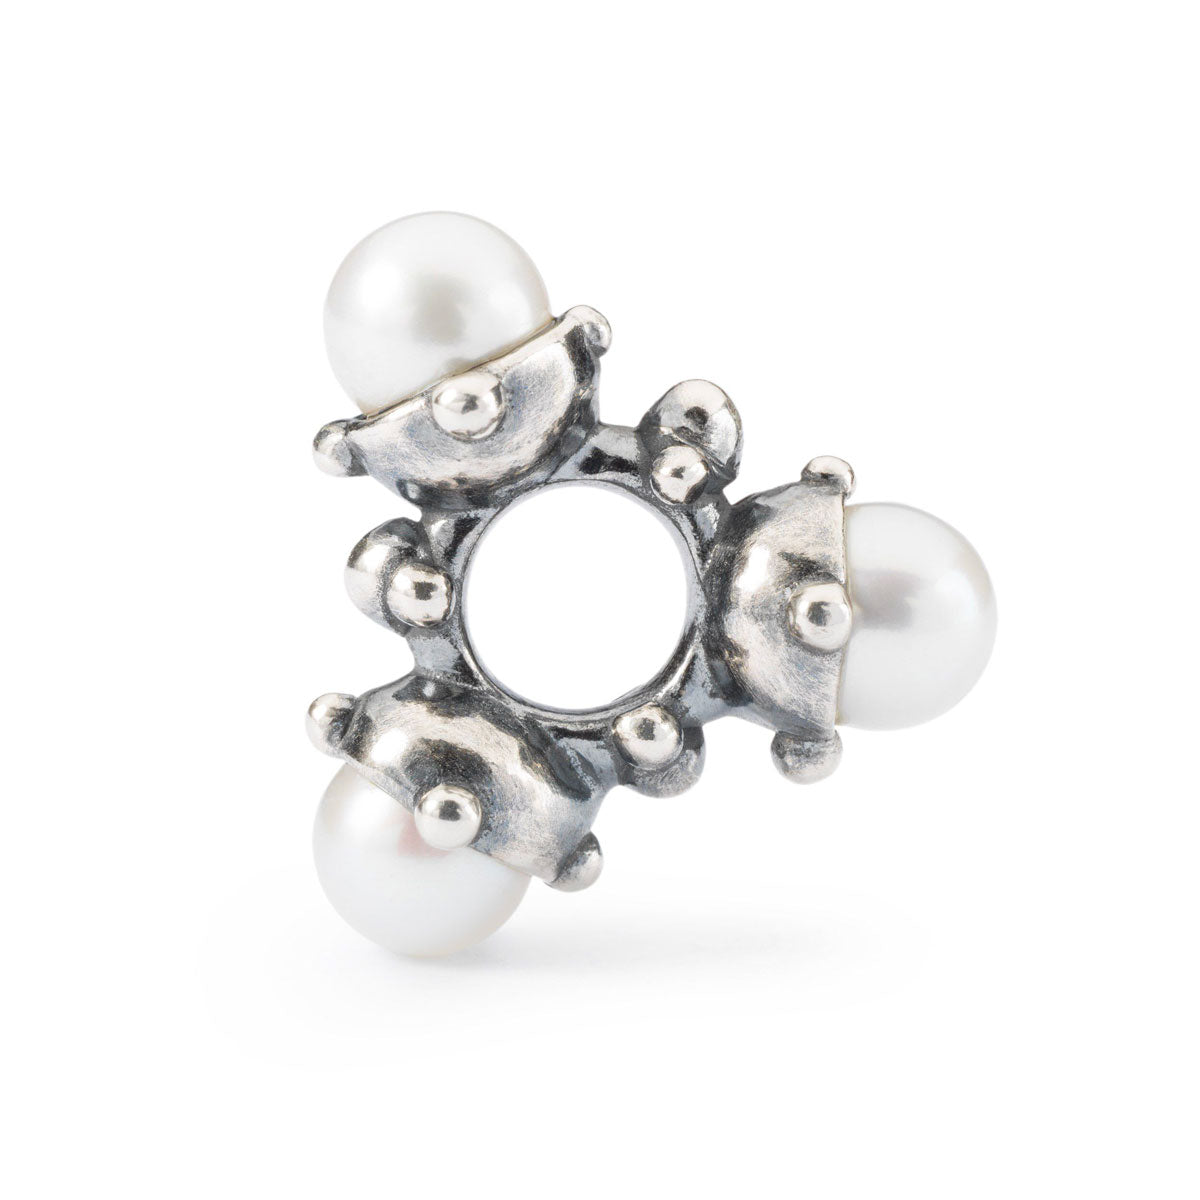 Perle di Luce﻿ è un beads in argento di medio-piccole dimensioni. La sua forma è simile a un triangolo dove su ogni angolo è incastonata una perla bianca tonda.